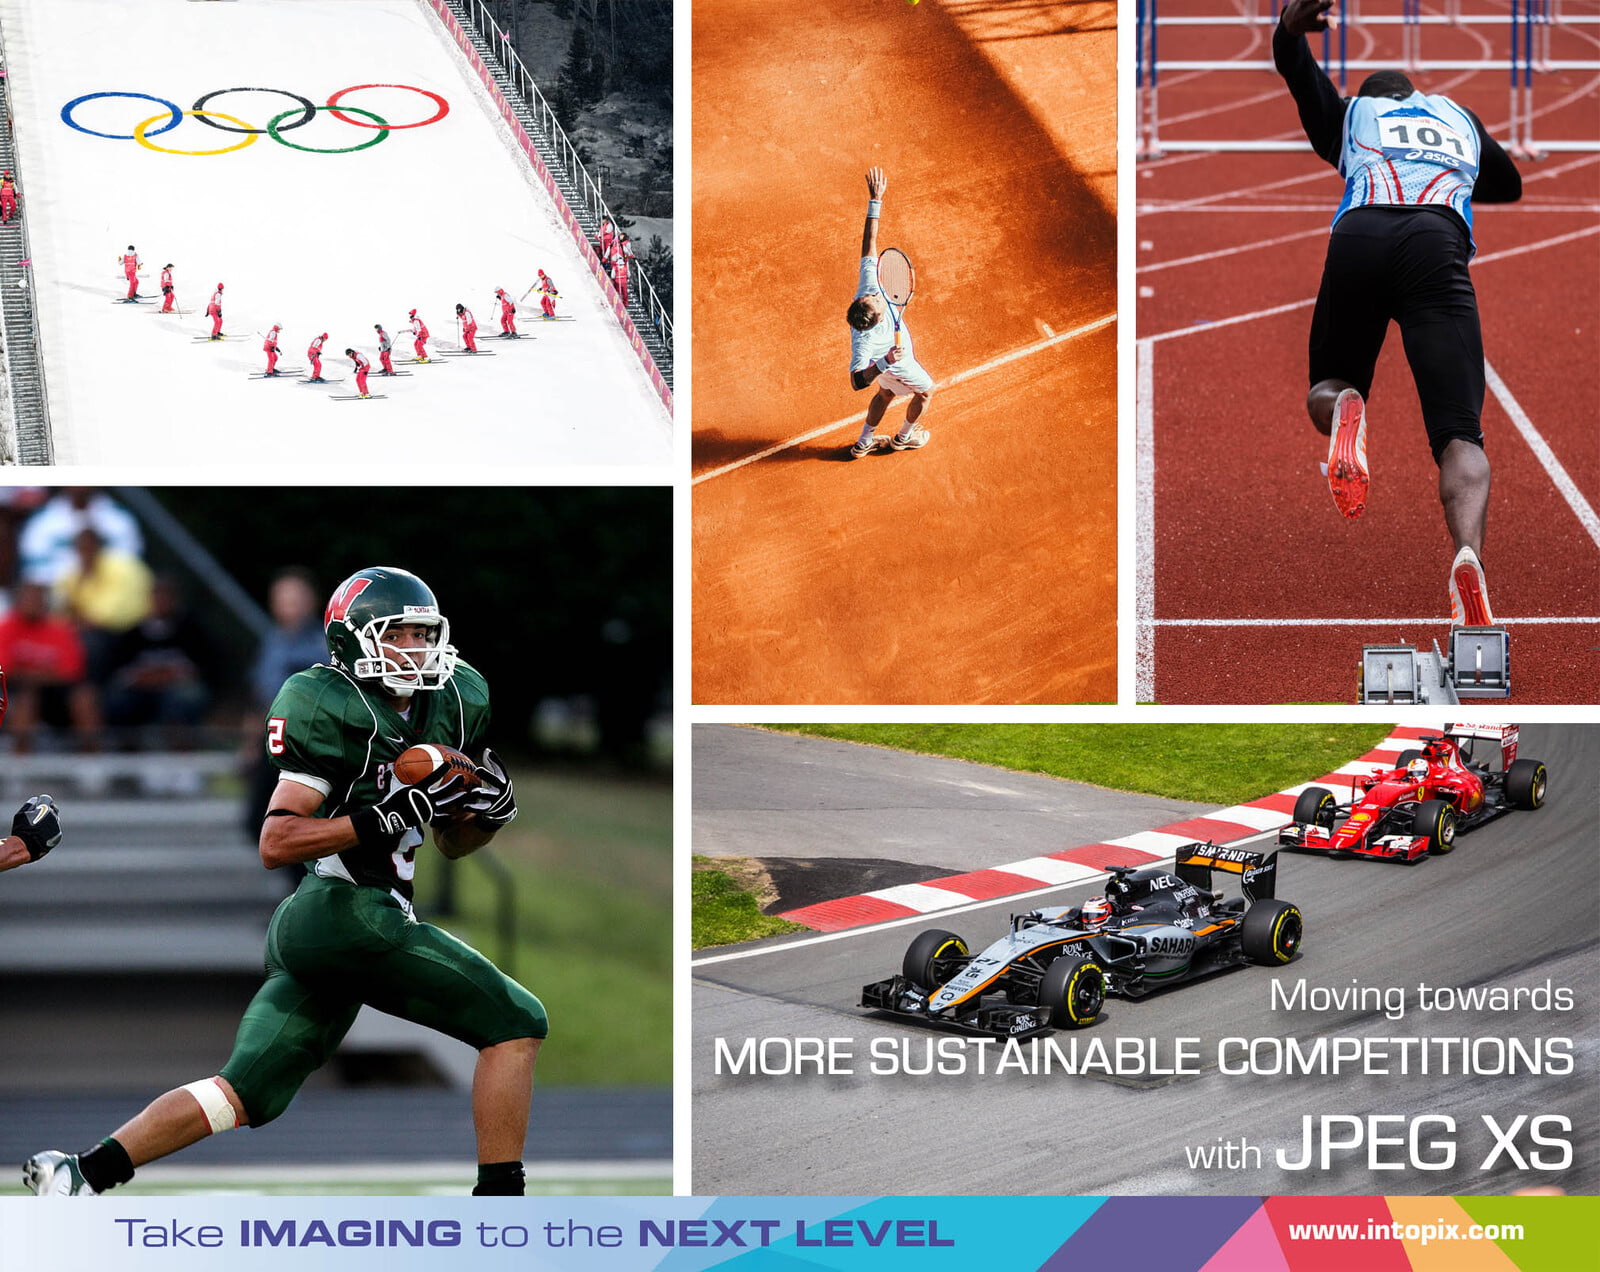 JPEG XSを使ったリモートプロダクションで、より持続可能なスポーツ競技会を実現